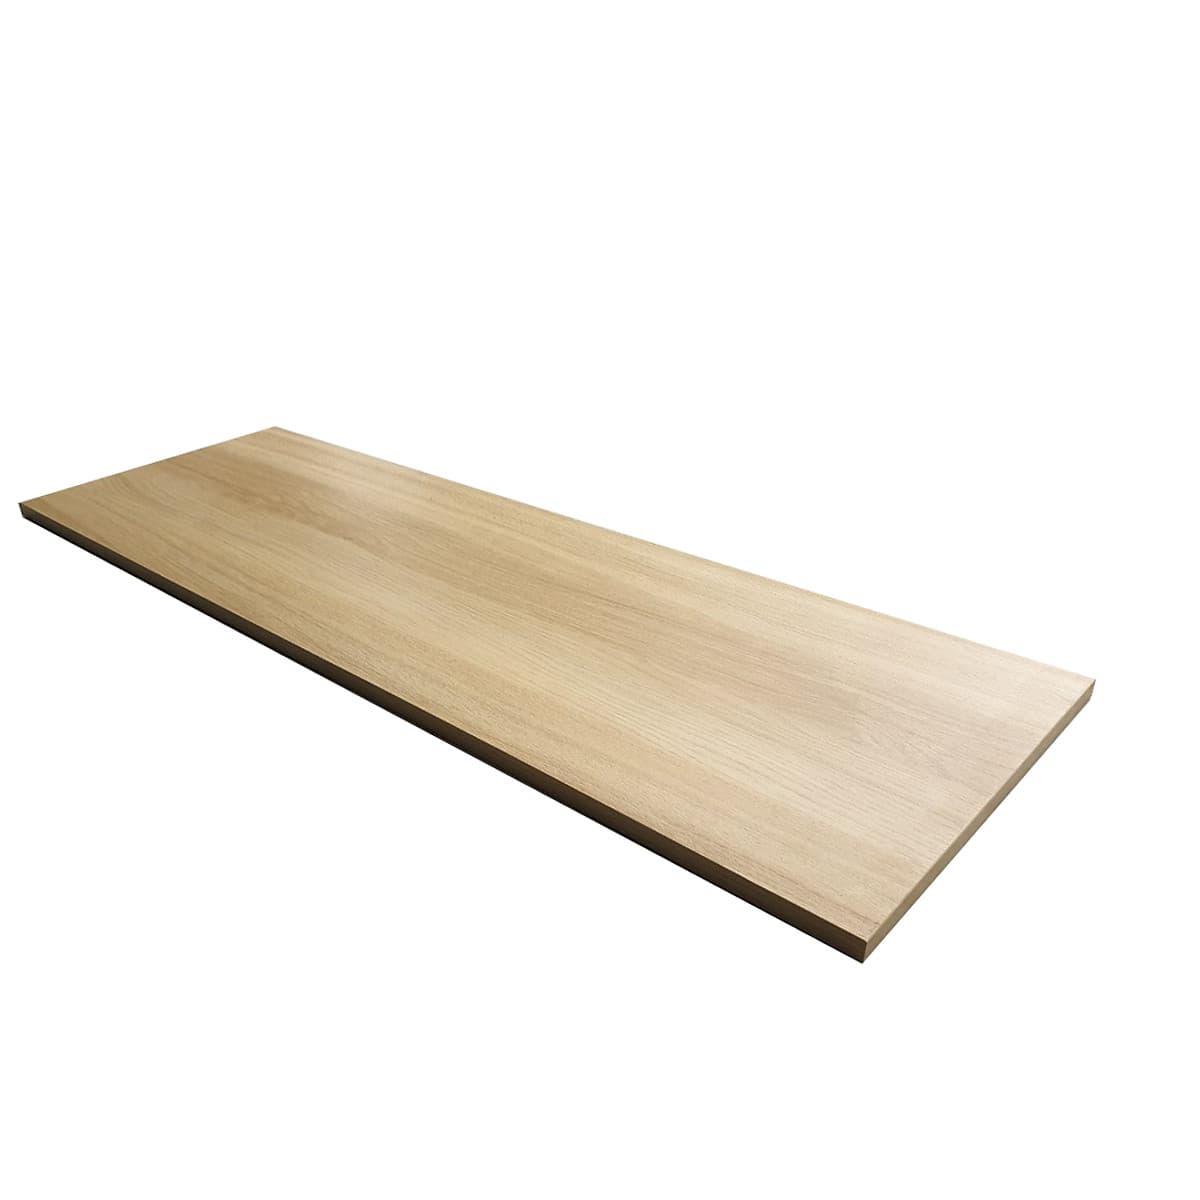 Kệ gỗ SMLIFE Railshelf 40x120cm - Phụ Kiện Thành Phần Để Lắp Hệ Kệ Ray Tường Railshelf - Vân gỗ